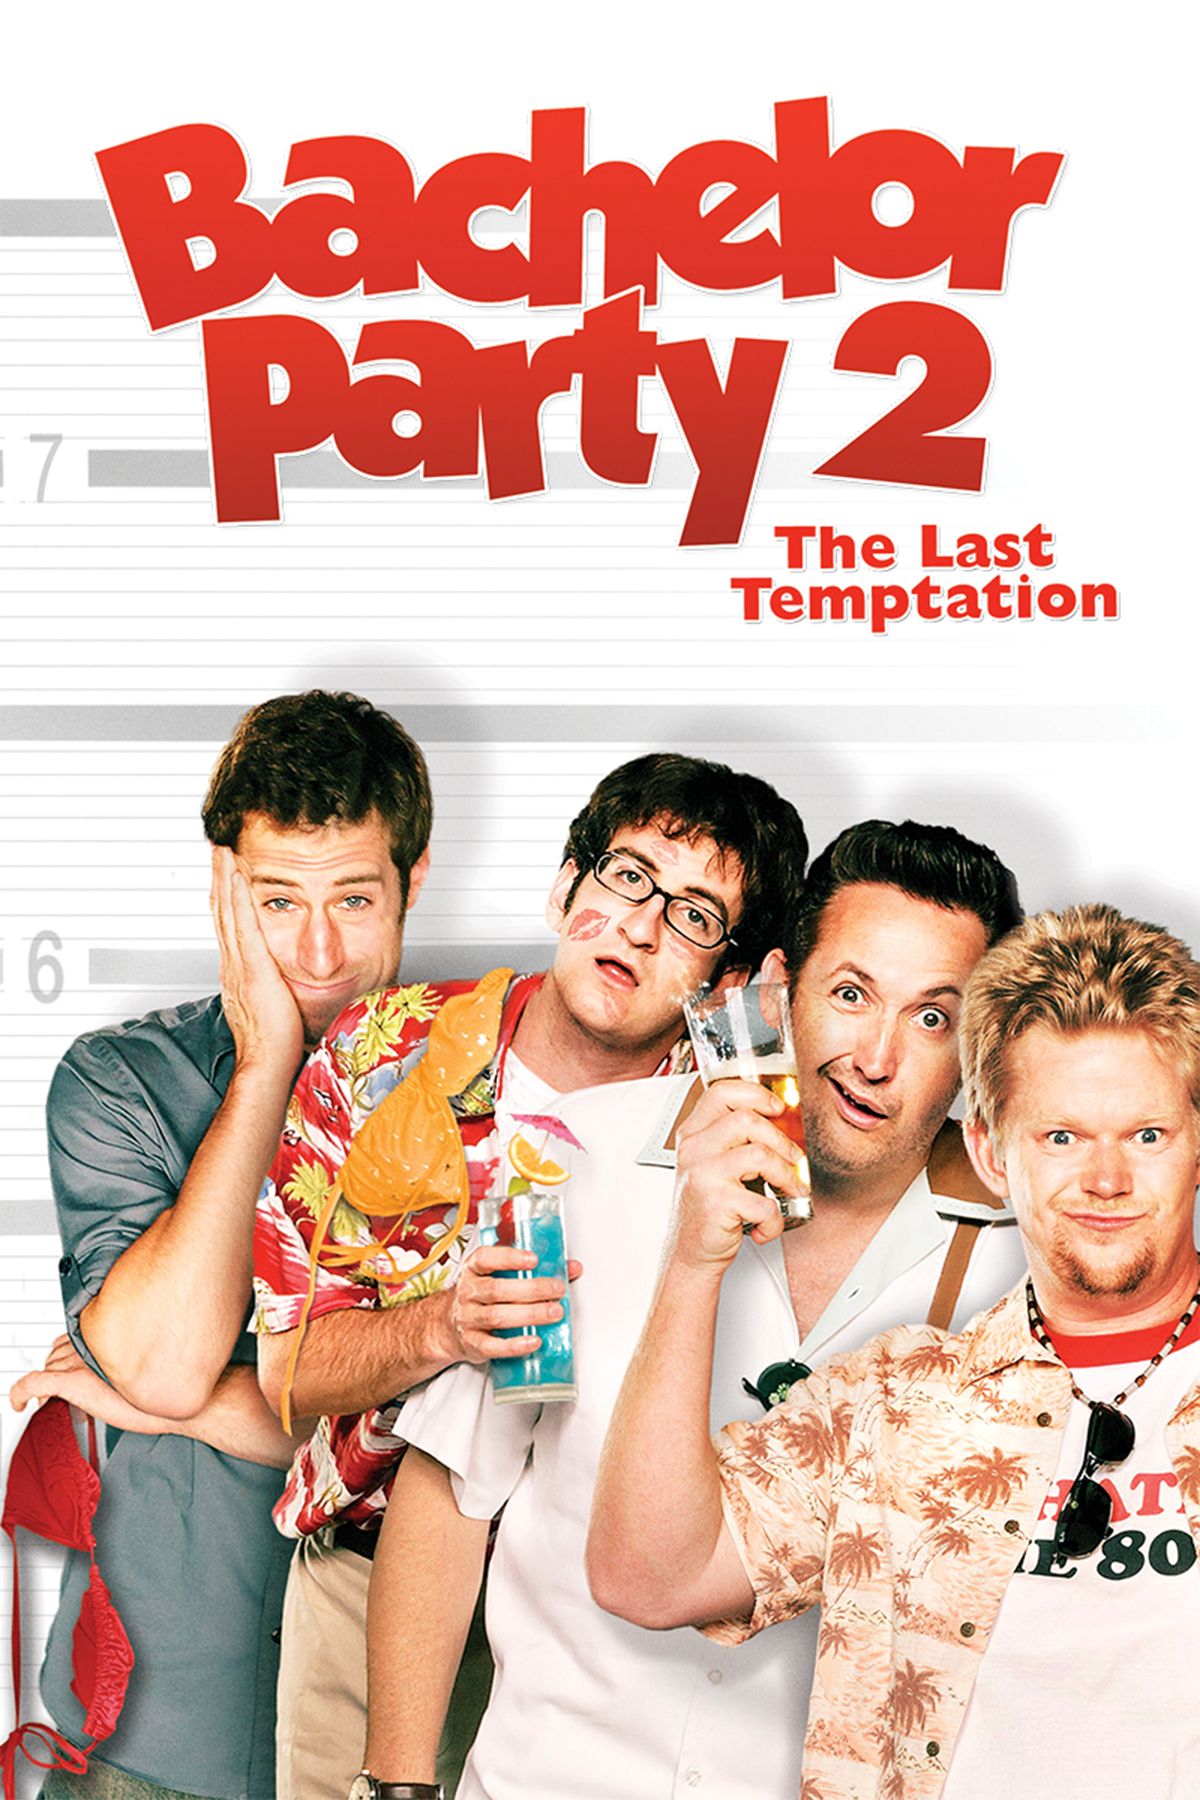 دانلود فیلم Bachelor Party 2: The Last Temptation 2008 با زیرنویس فارسی